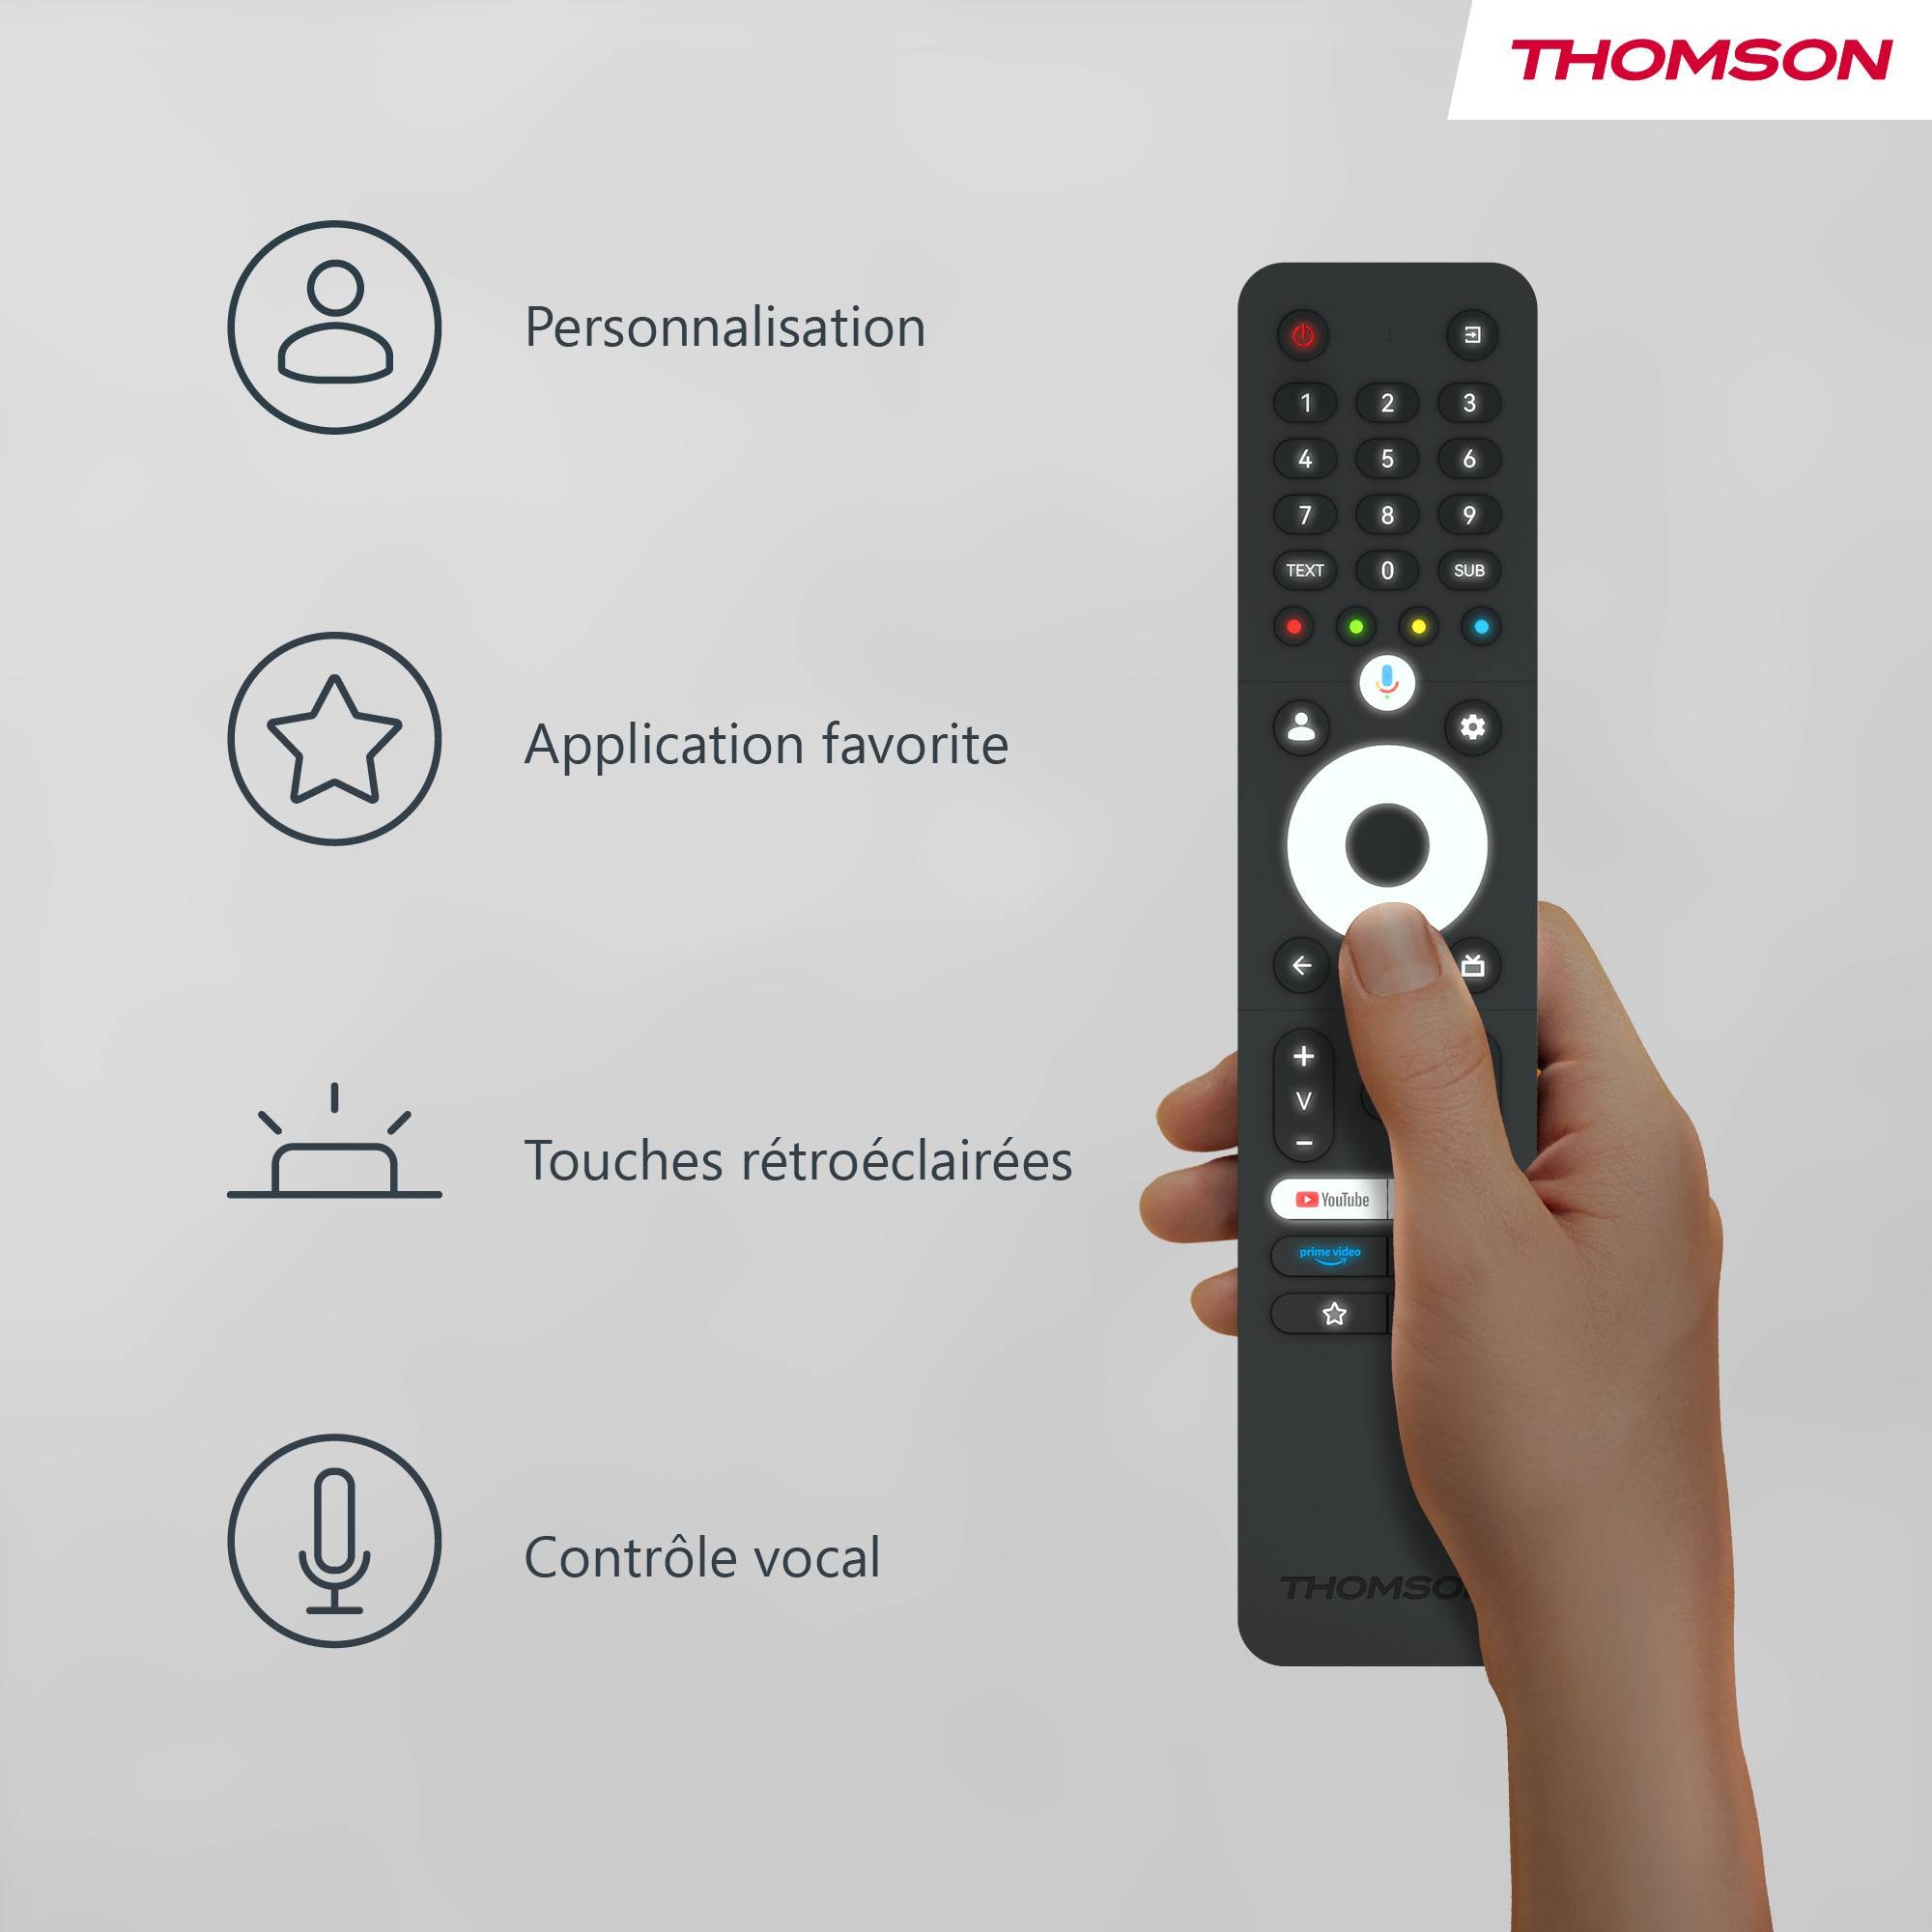 THOMSON TV LED 80 cm  - 32HG2S14